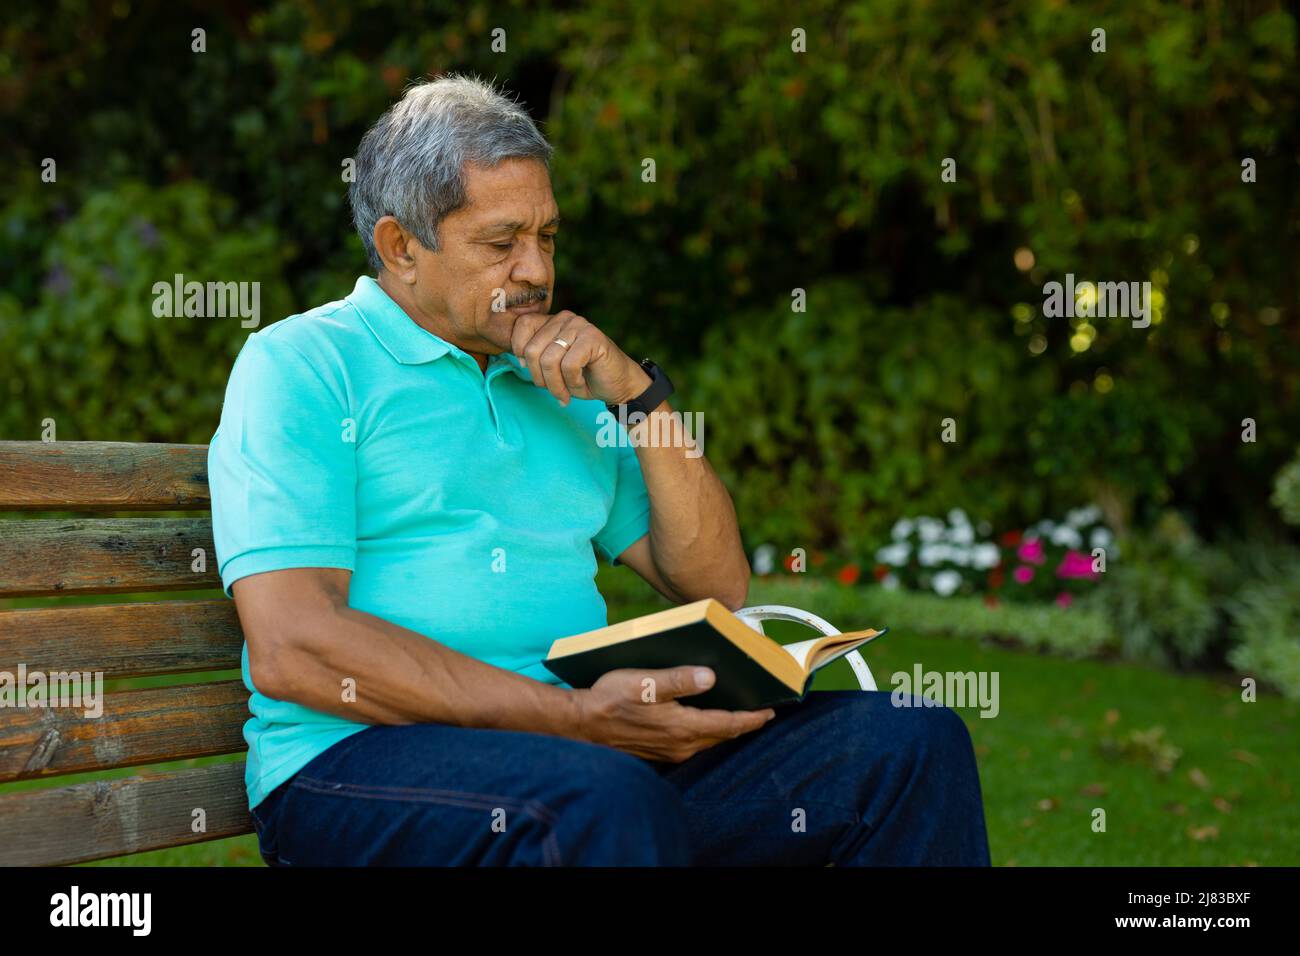 Hombre de edad biracial con mano en libro de lectura de mentón mientras está sentado en banco contra las plantas en el parque Foto de stock